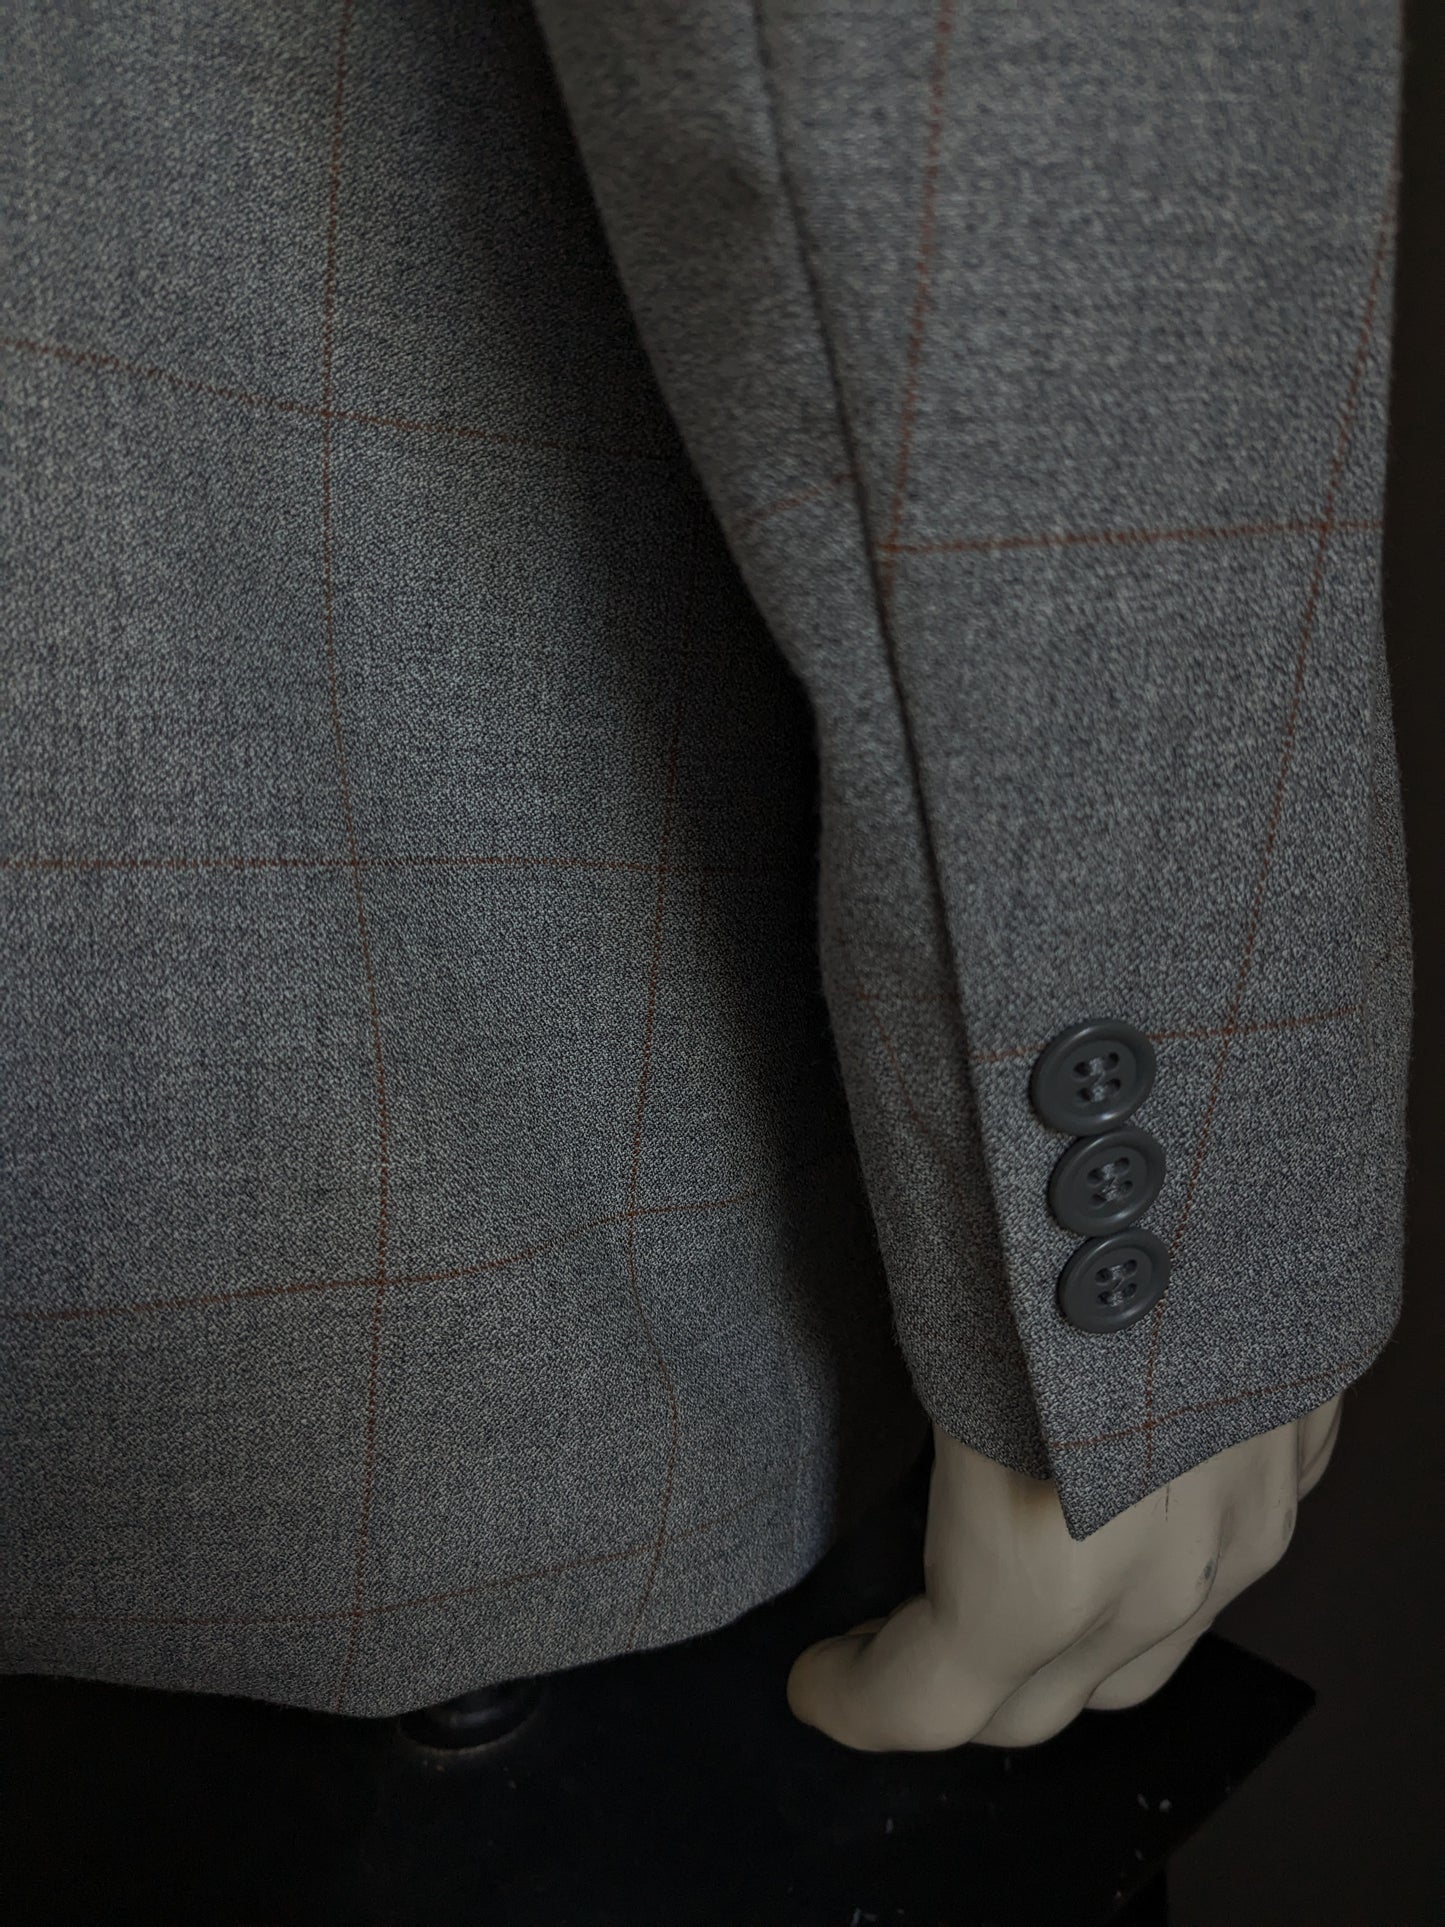 Chaqueta vintage de lana Bartlett & Walker. Marrón gris revisado. Tamaño 52 / L.